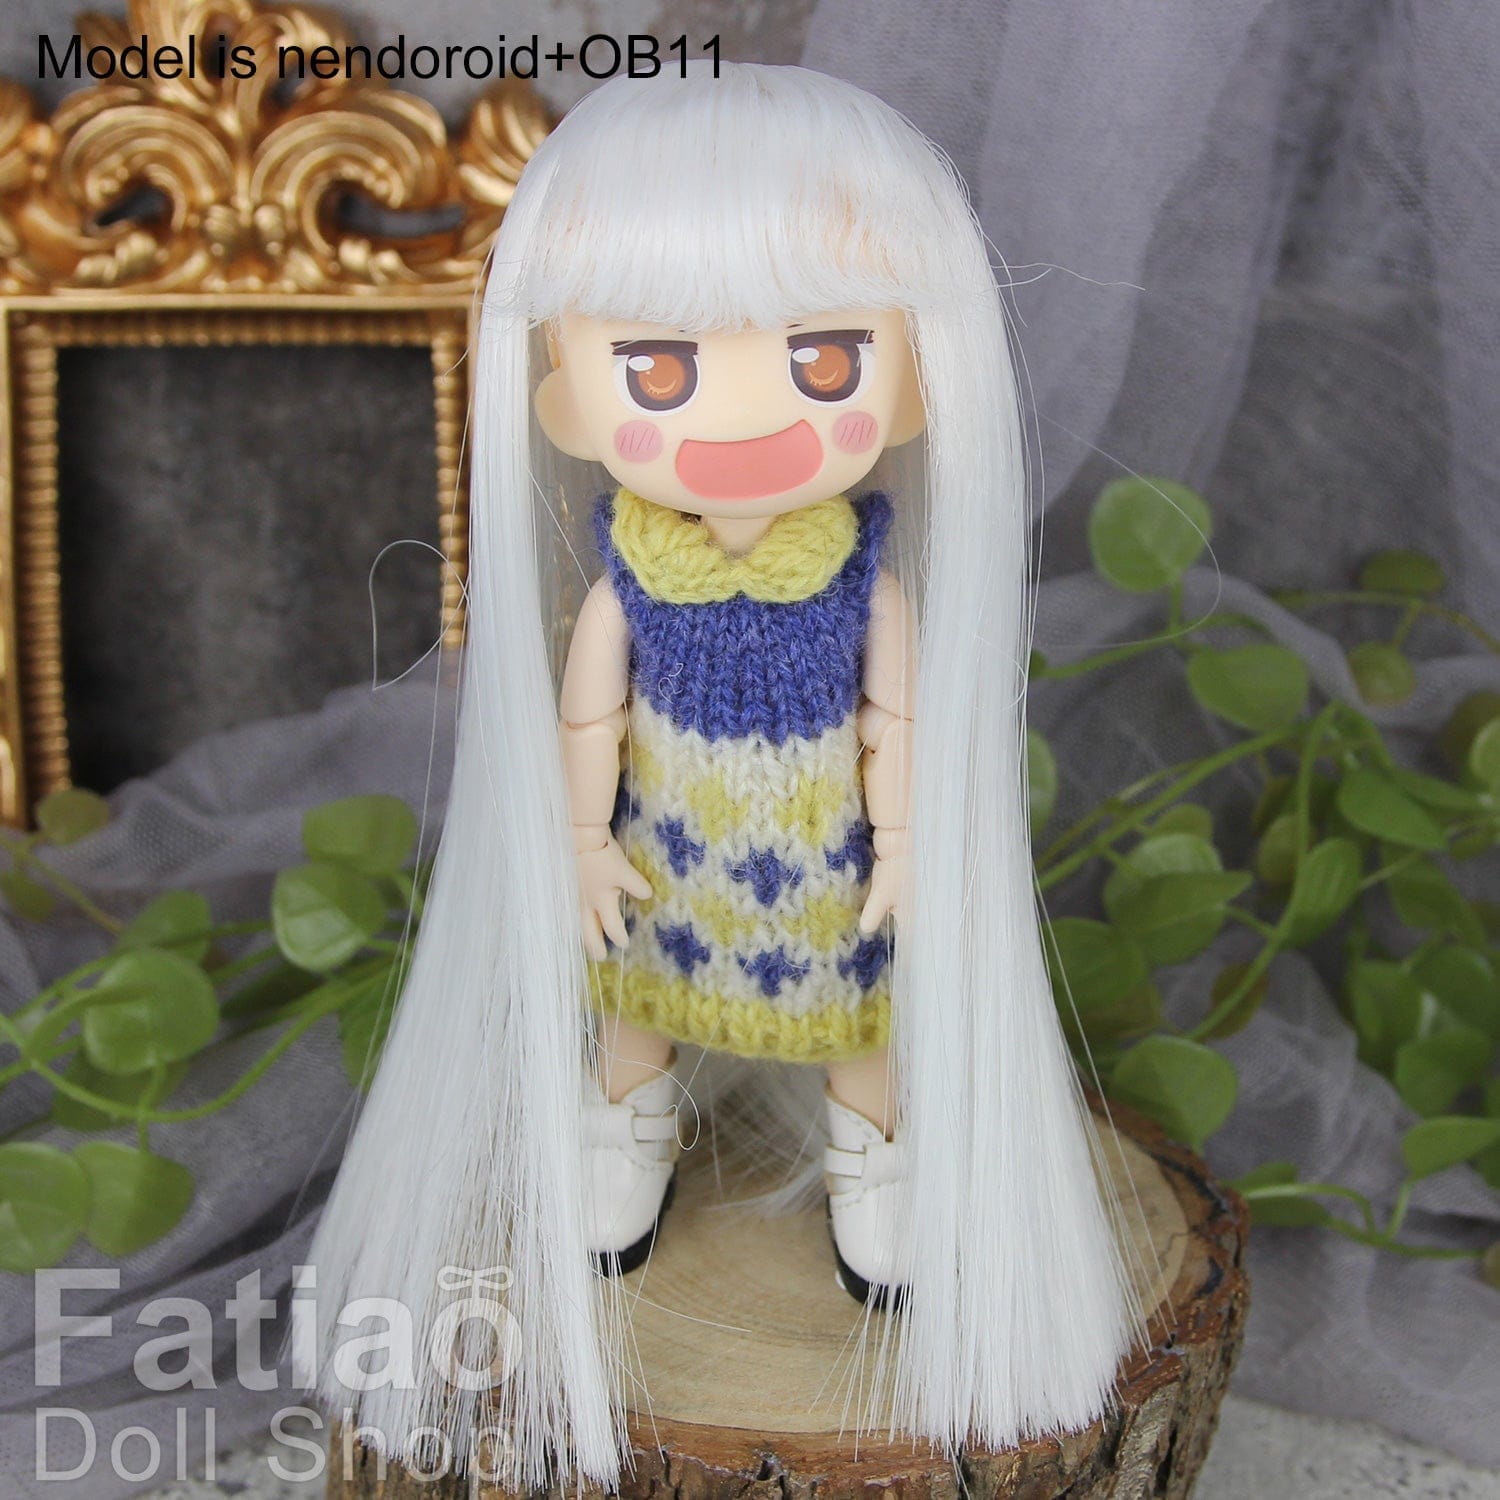 【Fatiao Doll Shop】FWF-010 娃用假髮 多色 / 4-5吋 BJD 8分 12分 iMda1.7